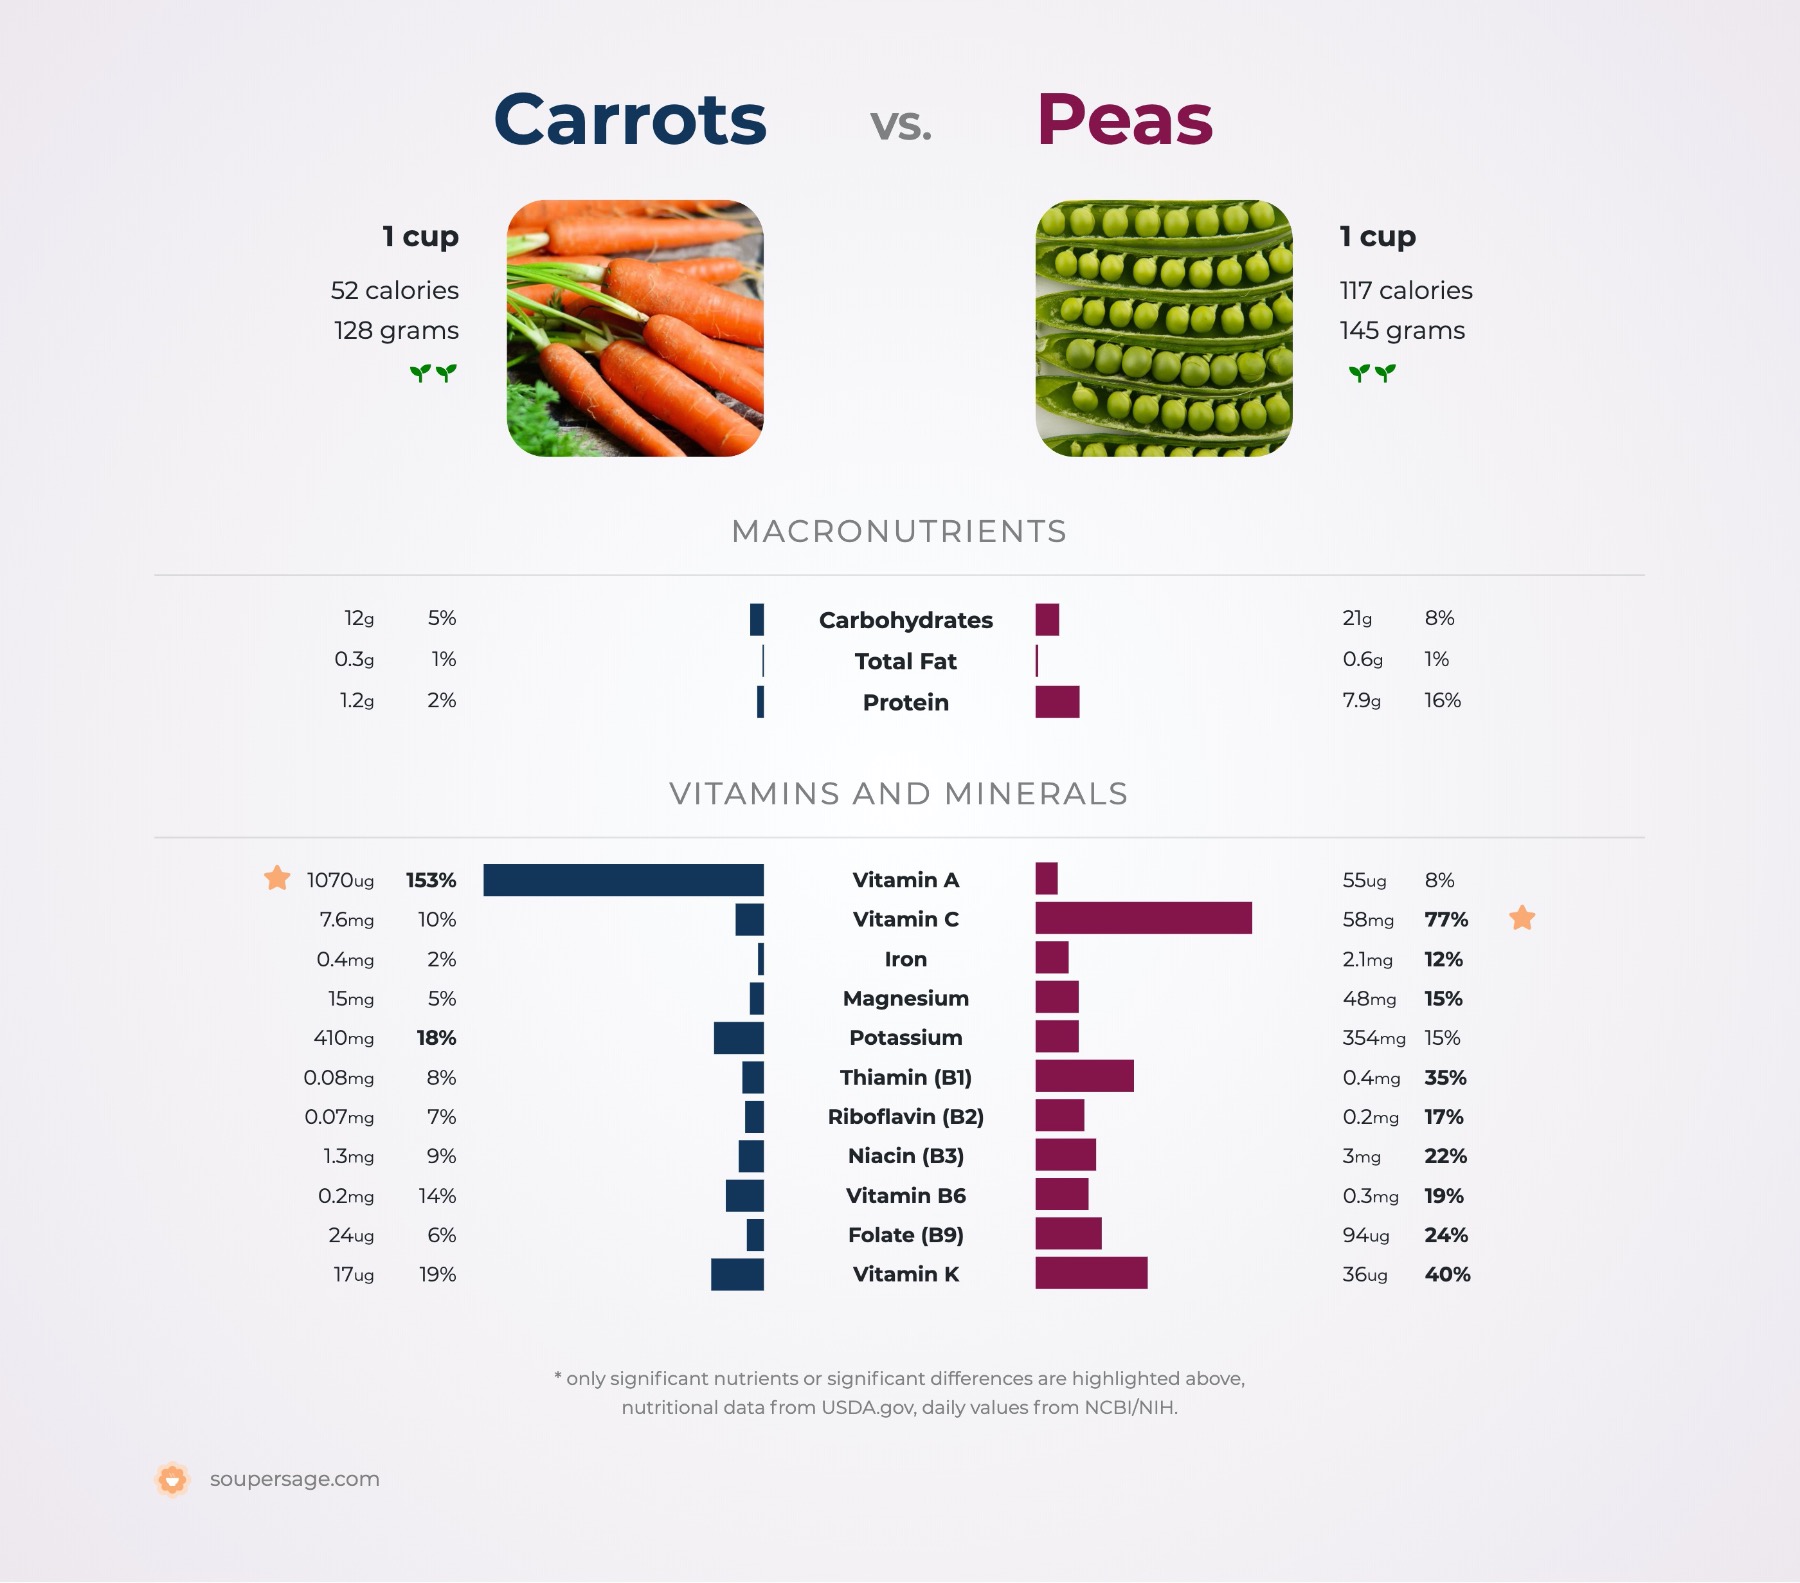 nutrition comparison of carrots vs. peas